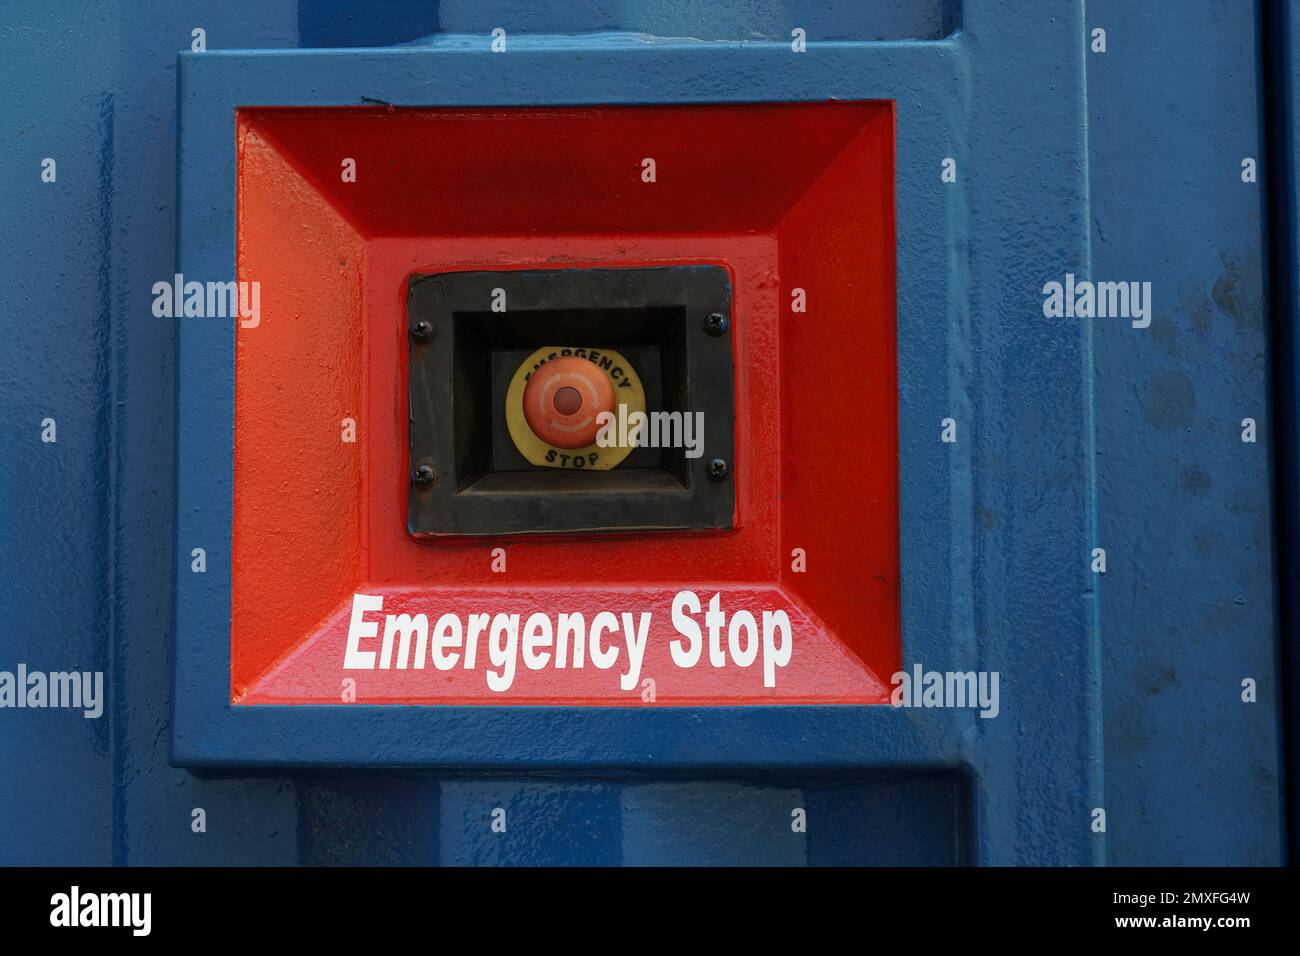 Roter Not-aus-Schalter an der Wand des blauen Behälters des Antriebsaggregats. Stockfoto